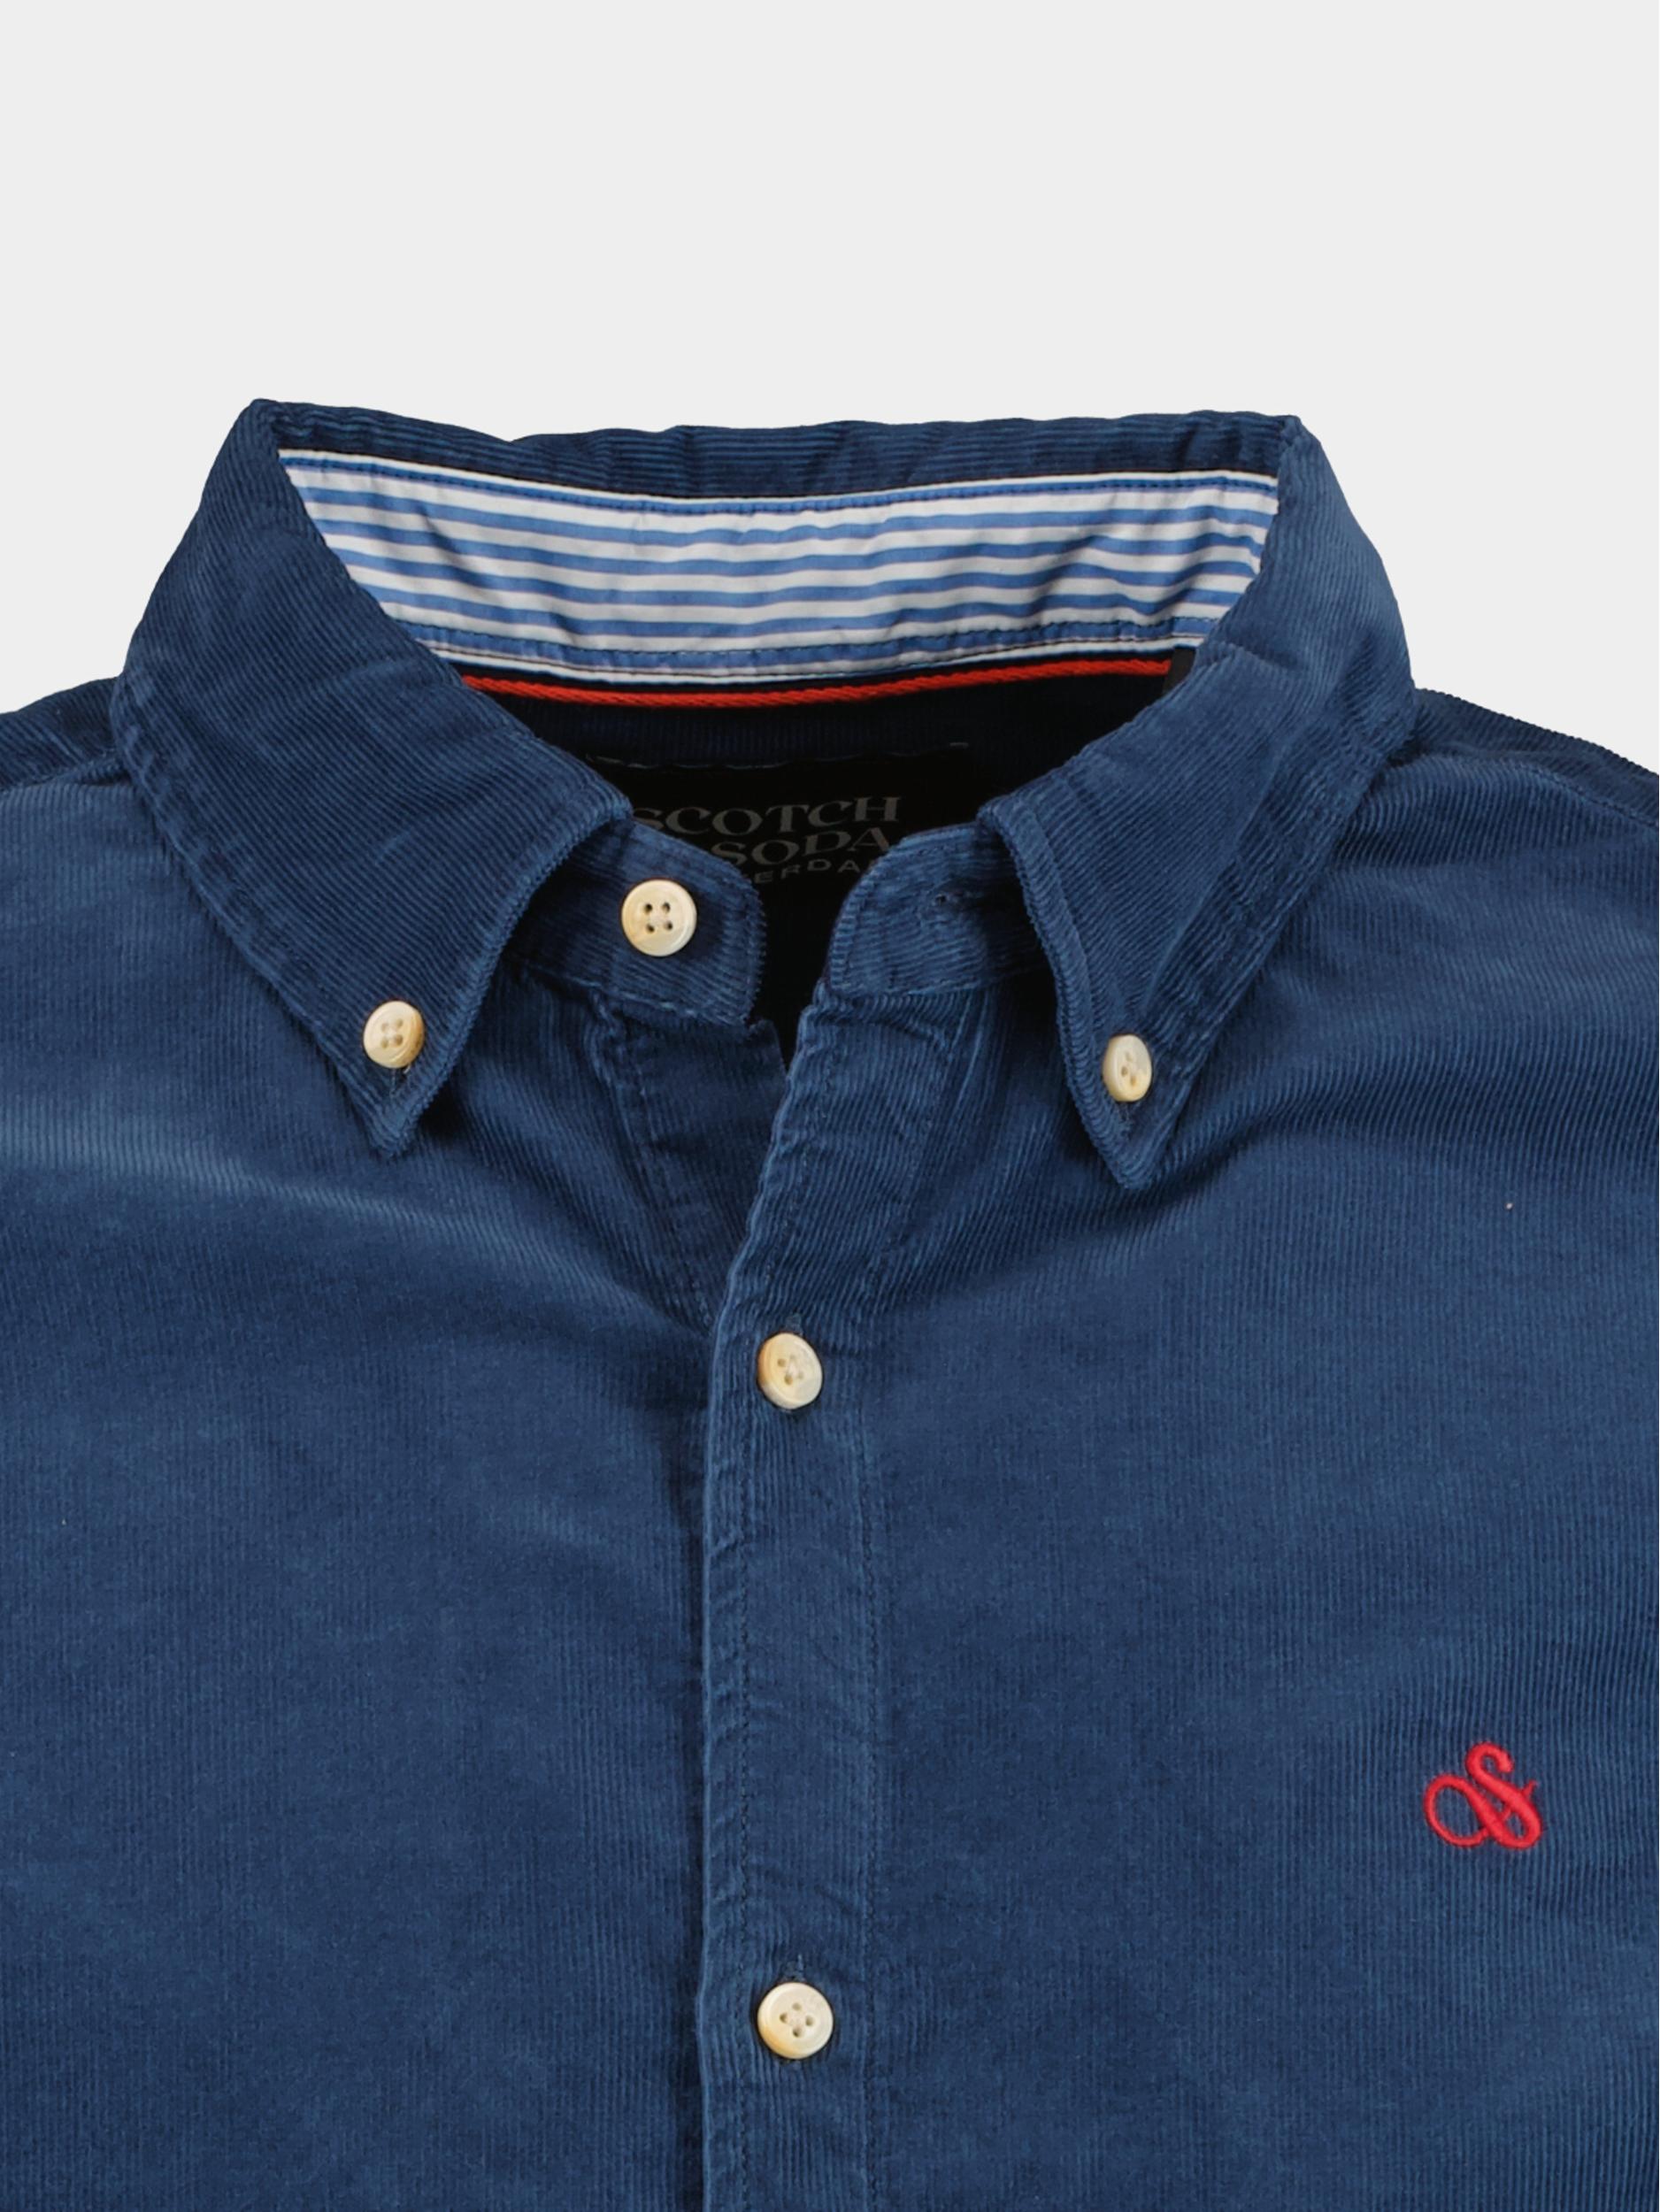 Scotch & Soda Casual hemd lange mouw Blauw Fine corduroy shirt - slim fit 173080/0807